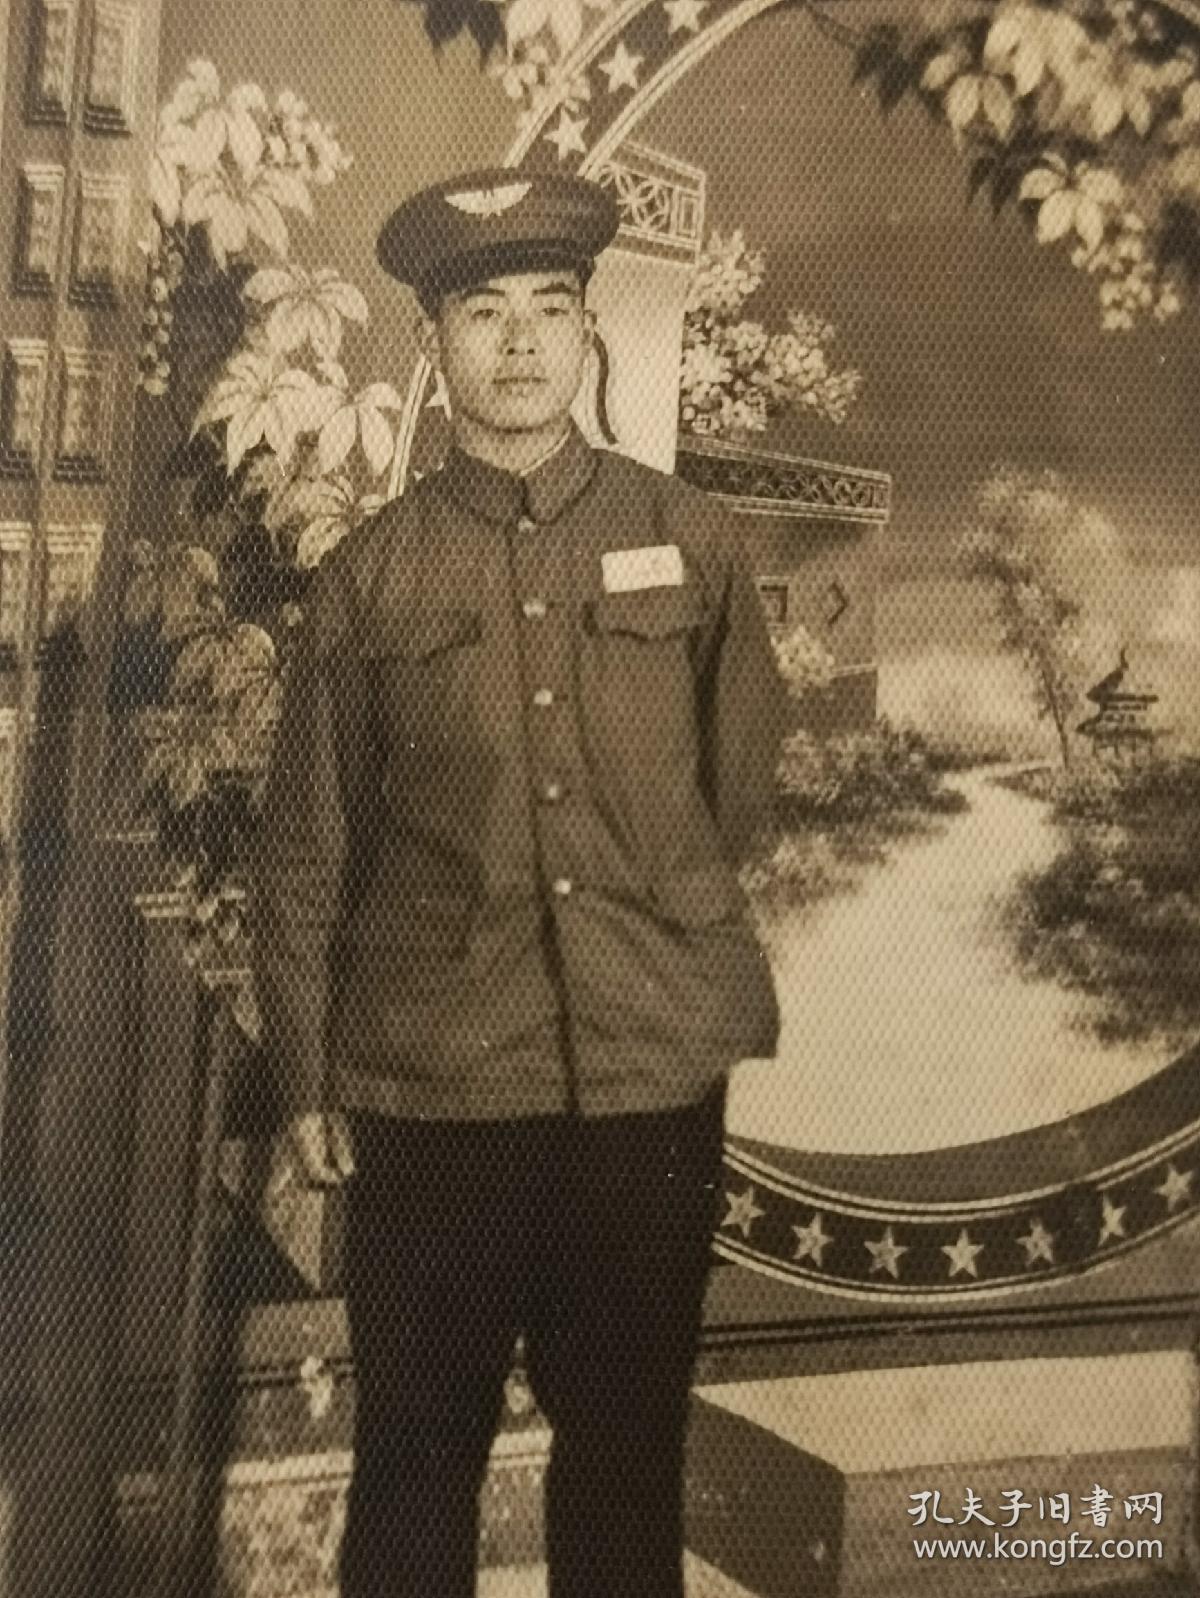 五十年代一张空军军官老照片